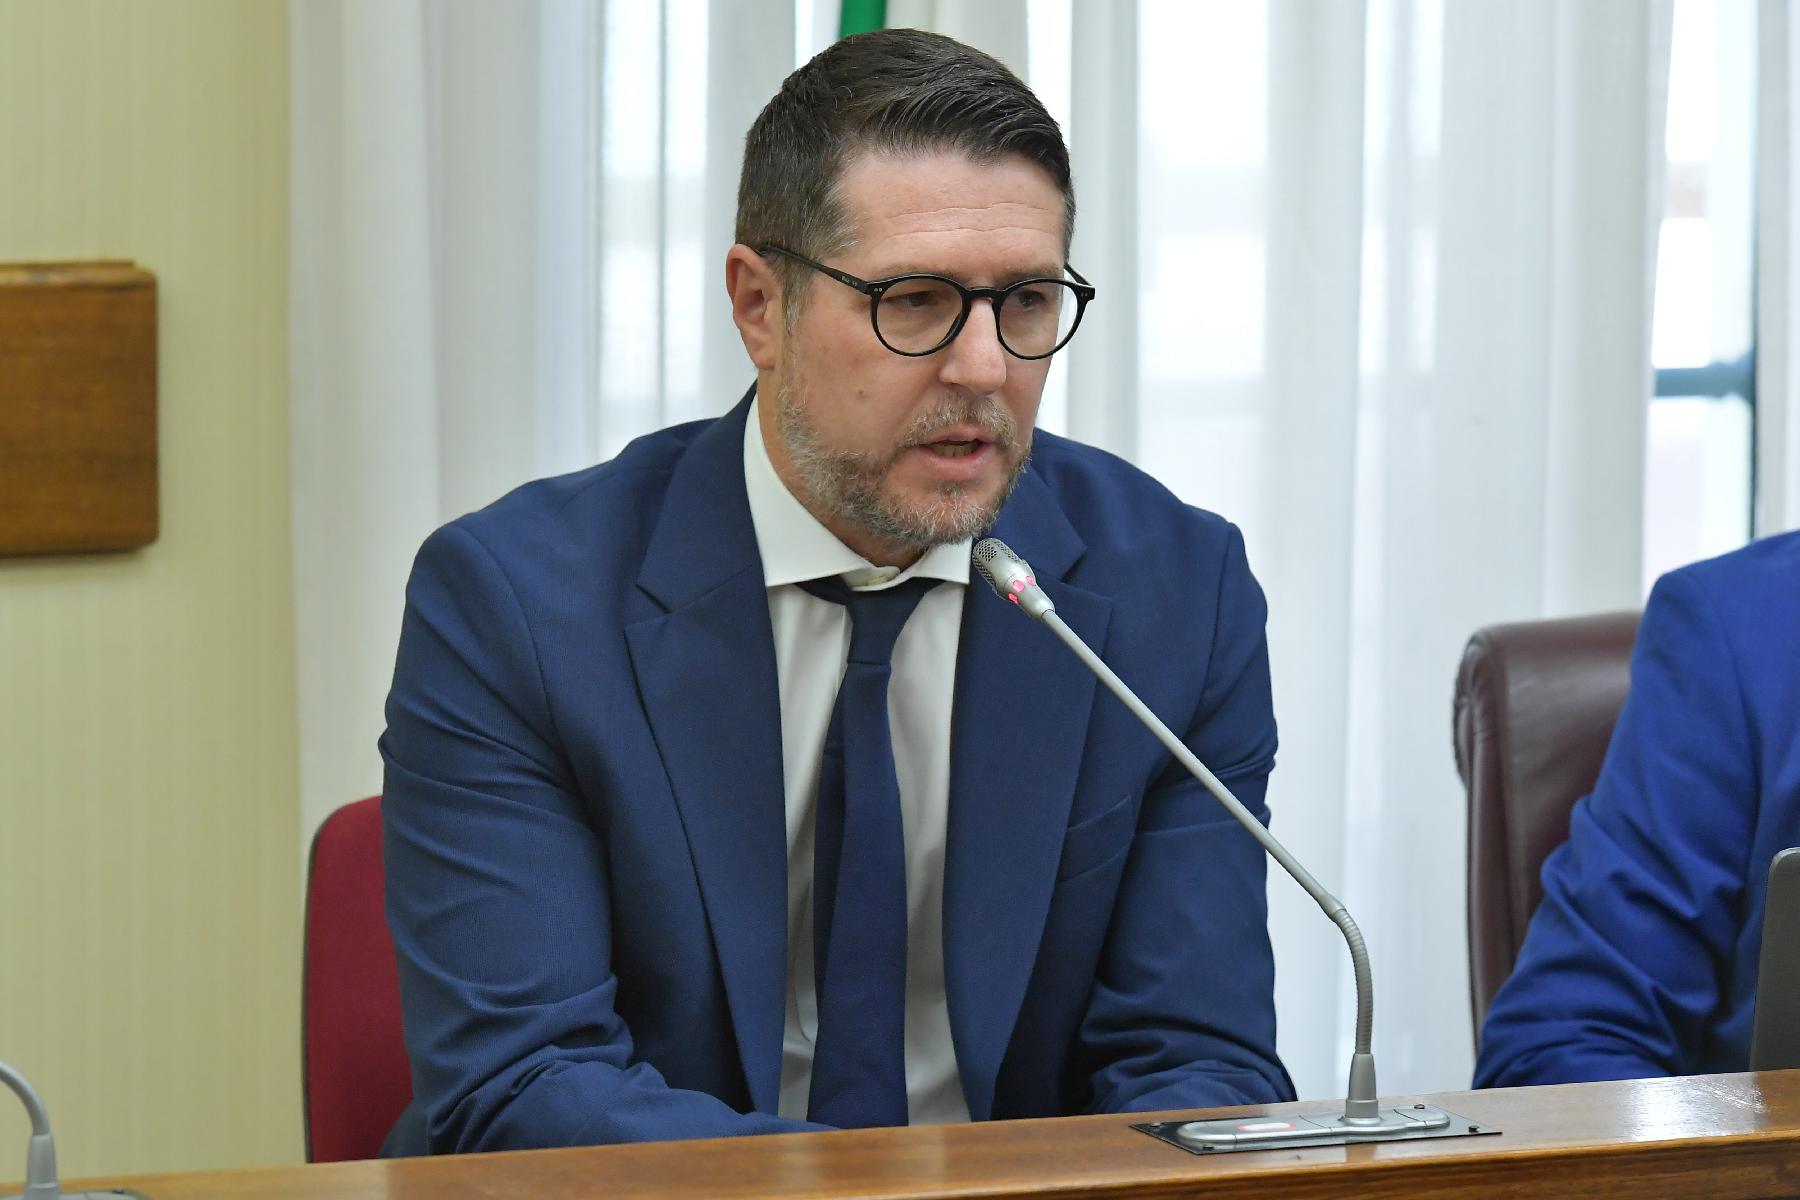 La Commissione parlamentare di inchiesta sulle condizioni di sicurezza e sullo stato di degrado delle città e delle loro periferie della Camera ha svolto l'audizione del sottosegretario all'Interno, Nicola Molteni.